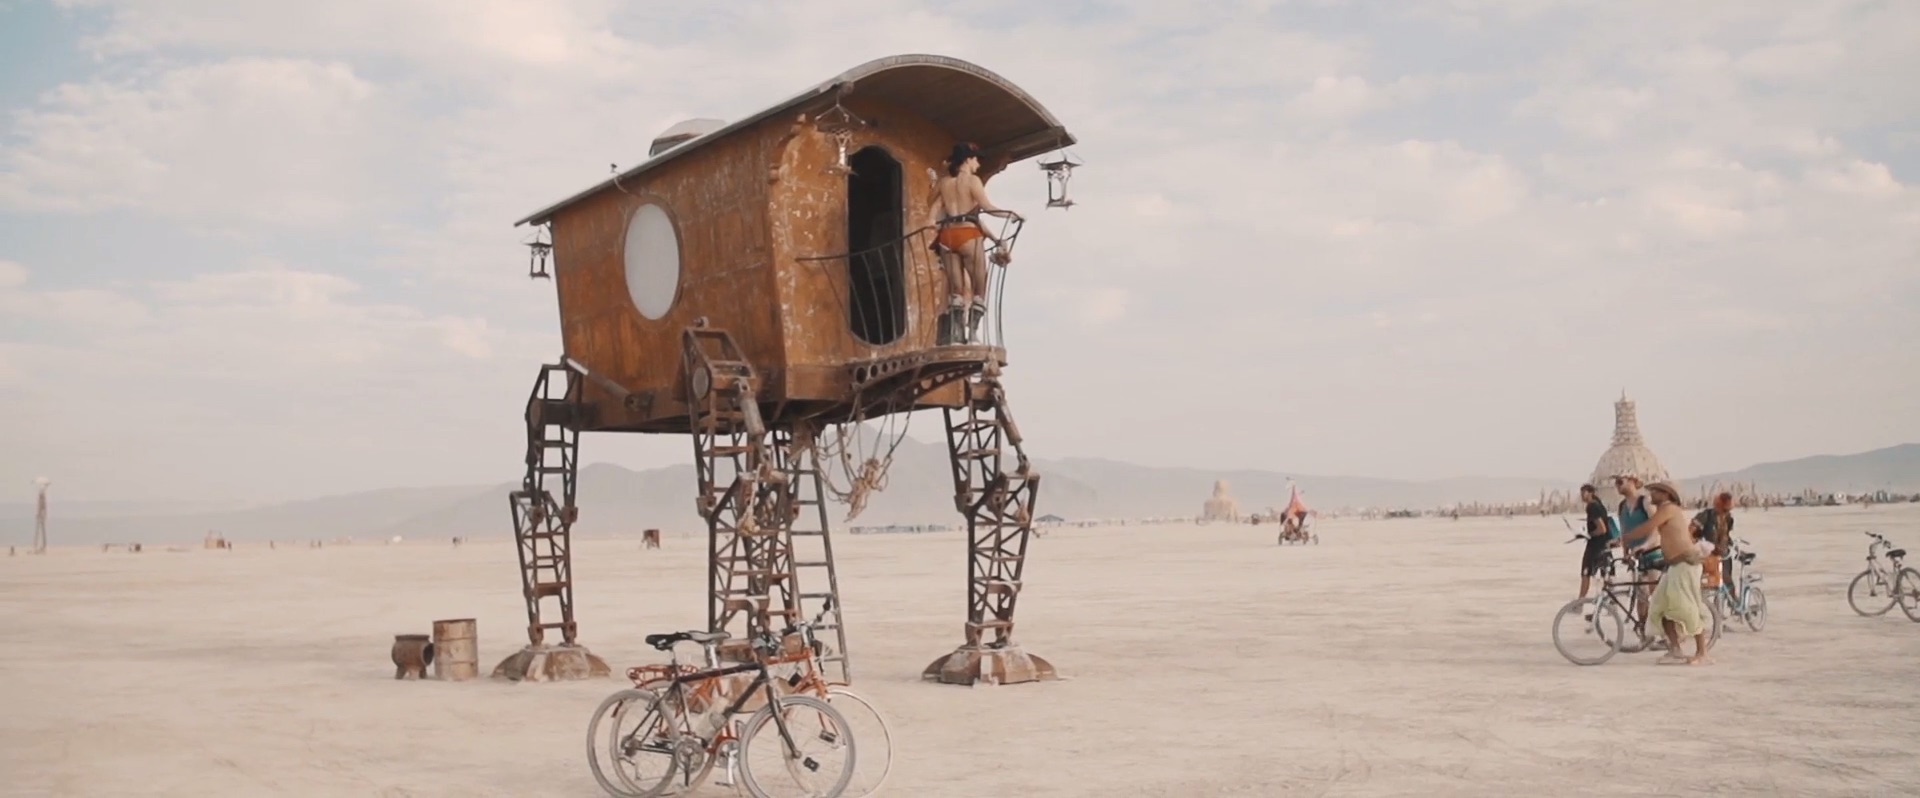 Art of Burning Man 2014_9